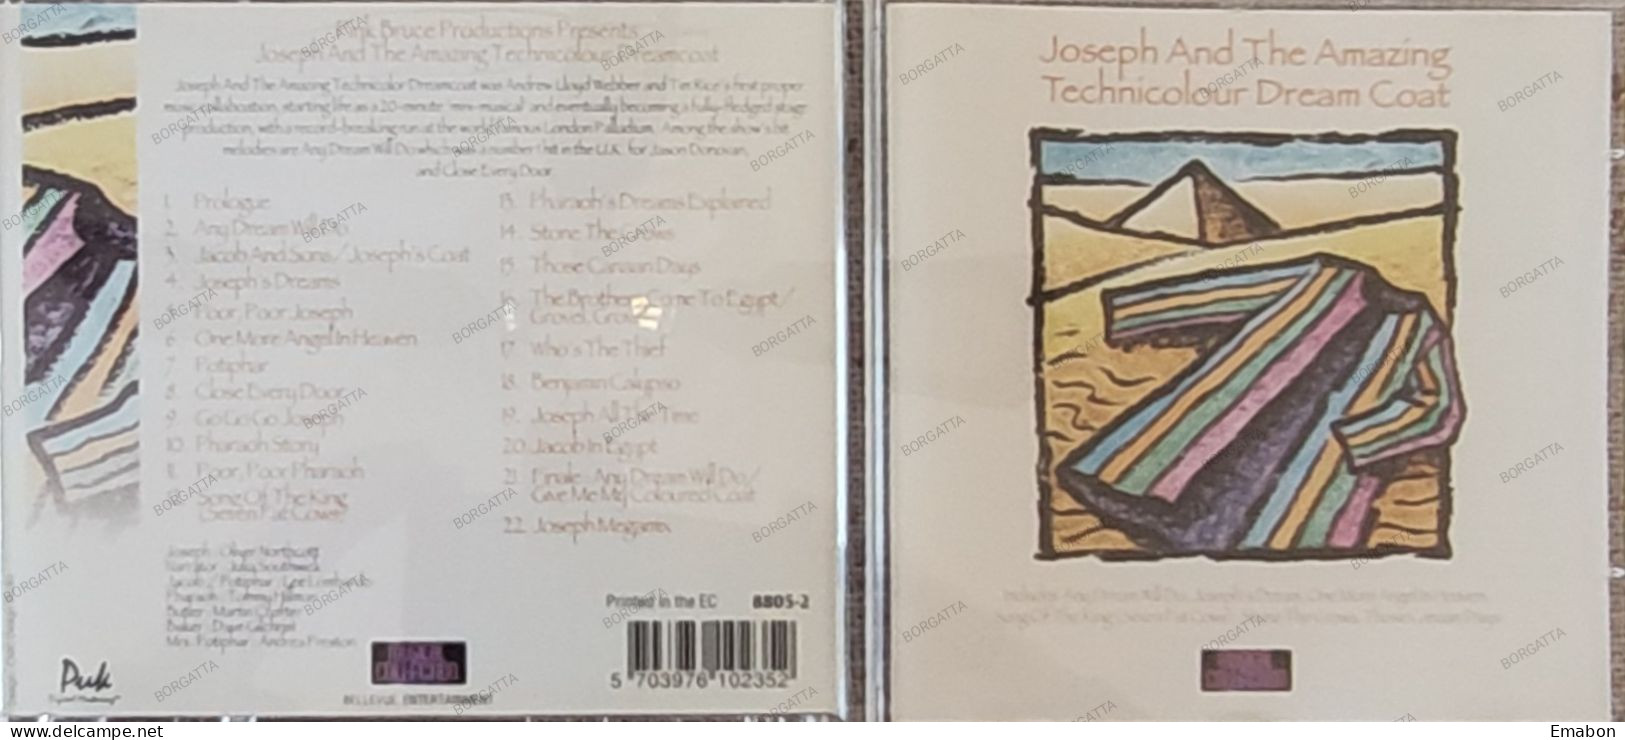 BORGATTA - FILM MUSIC - Cd JOSEPH AND THE AMAZING TECHNICOLOR DREAMCOAT - BELLEVUE 1996 - USATO In Buono Stato - Musica Di Film